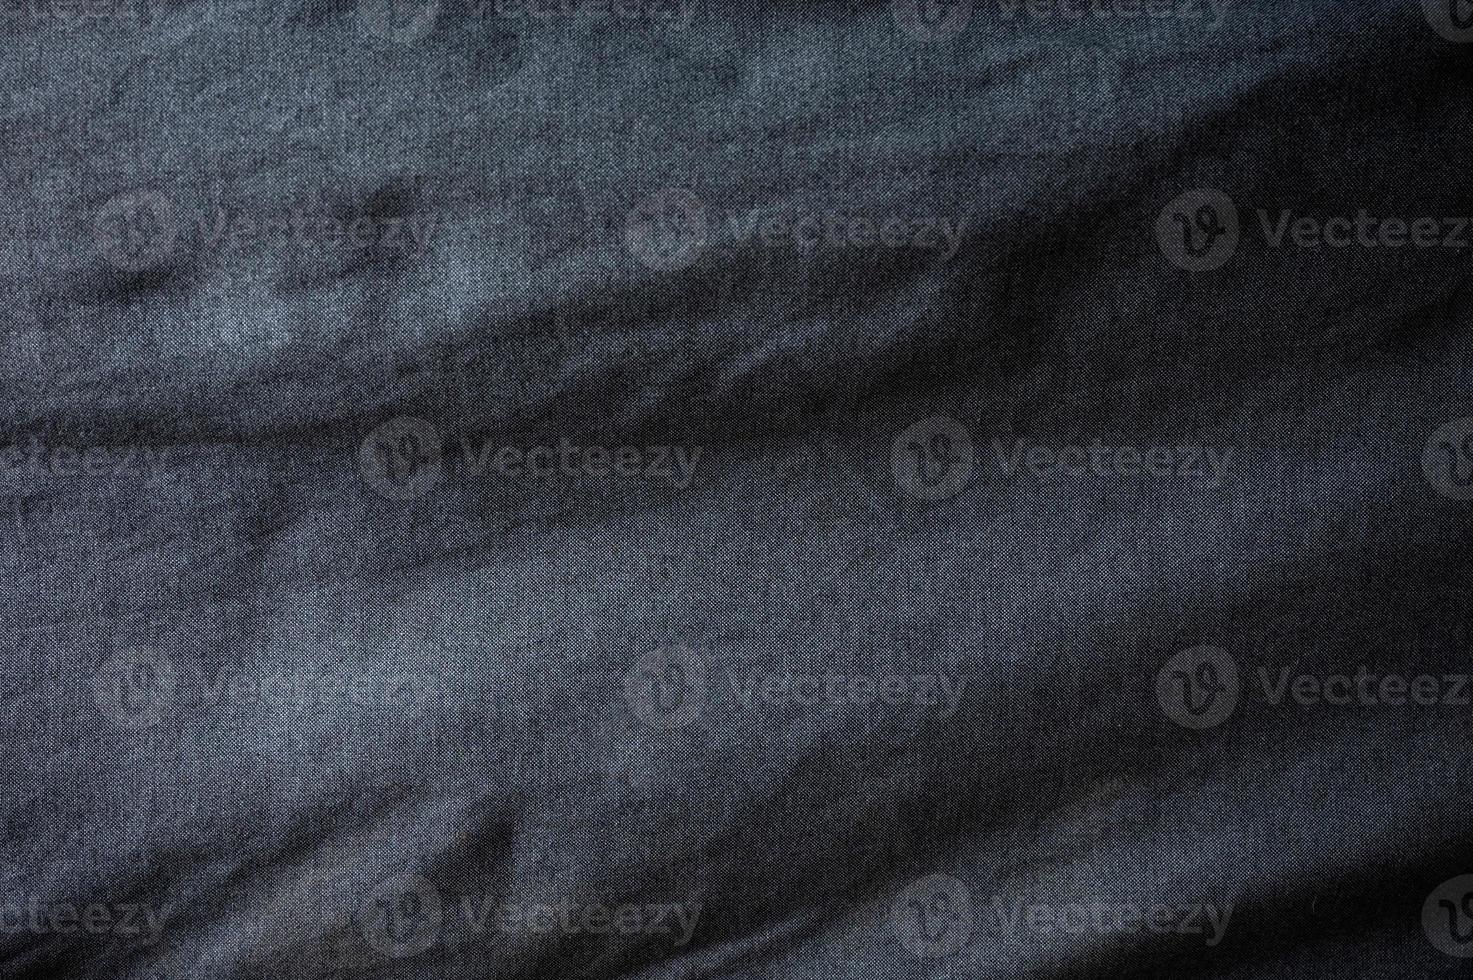 sofá de tecido preto amassado com textura brilhante foto